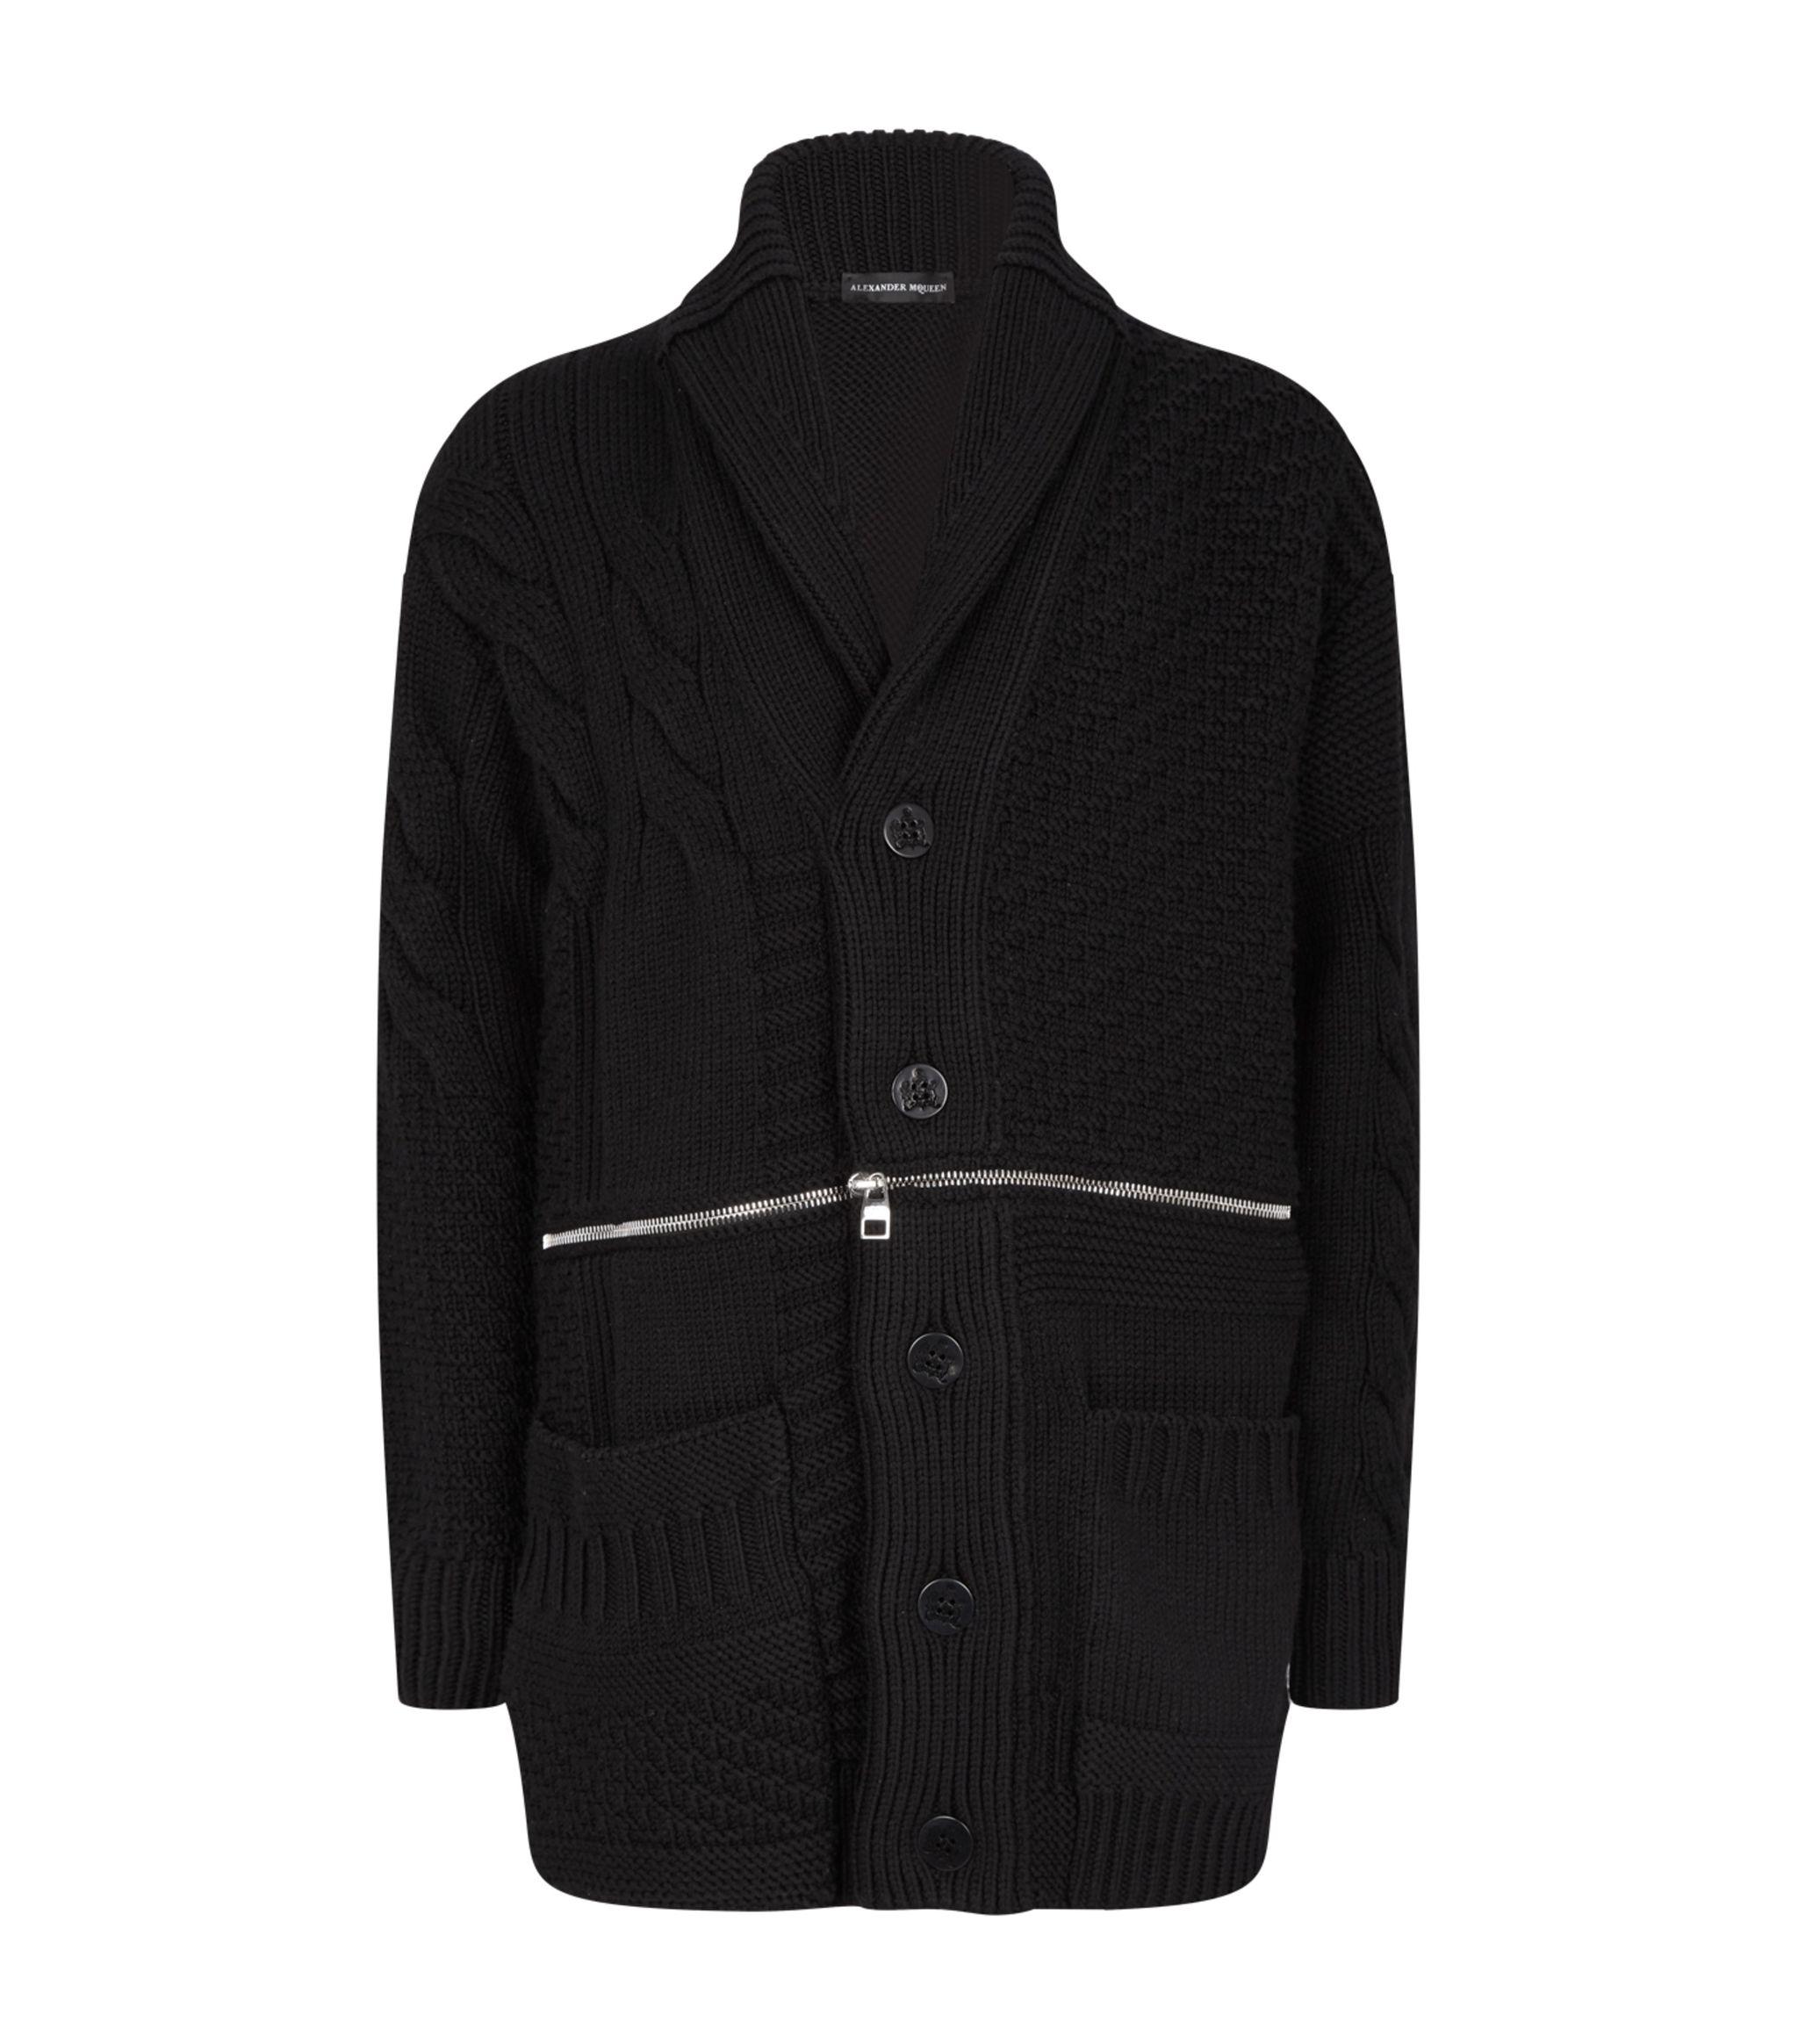 Alexander McQueen Zip-detail Wool Cardigan in Black for Men - Lyst